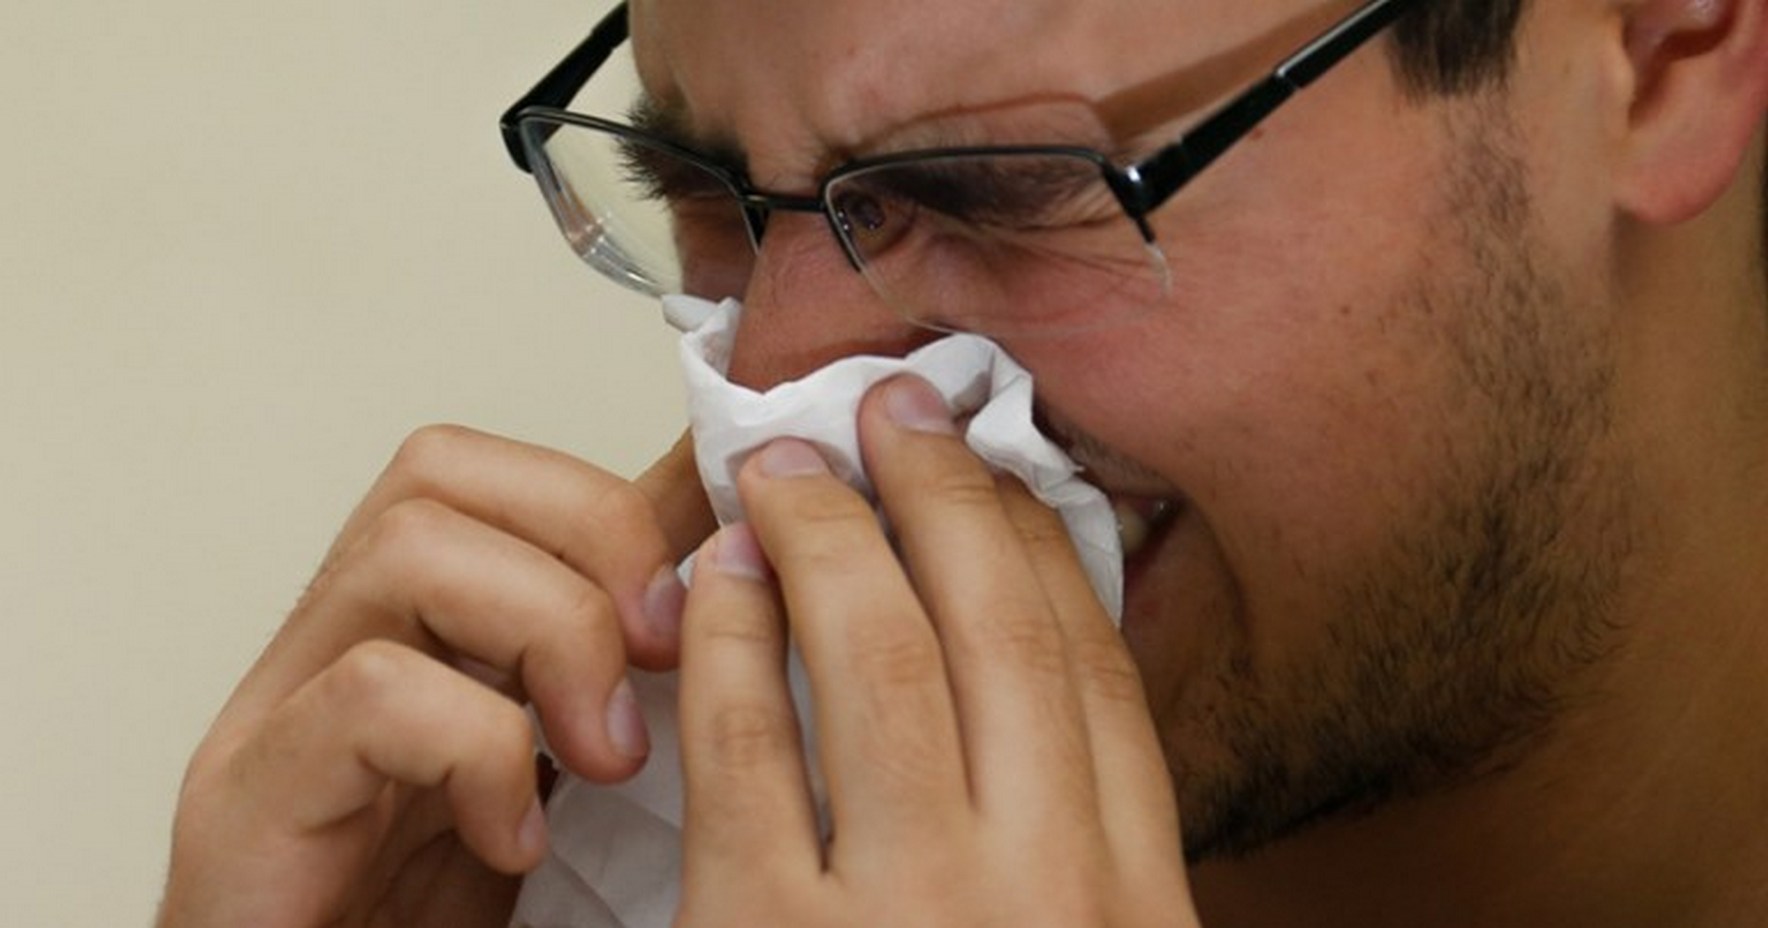 ❄? Problemas respiratórios aumentam no inverno e cuidados devem ser adotados